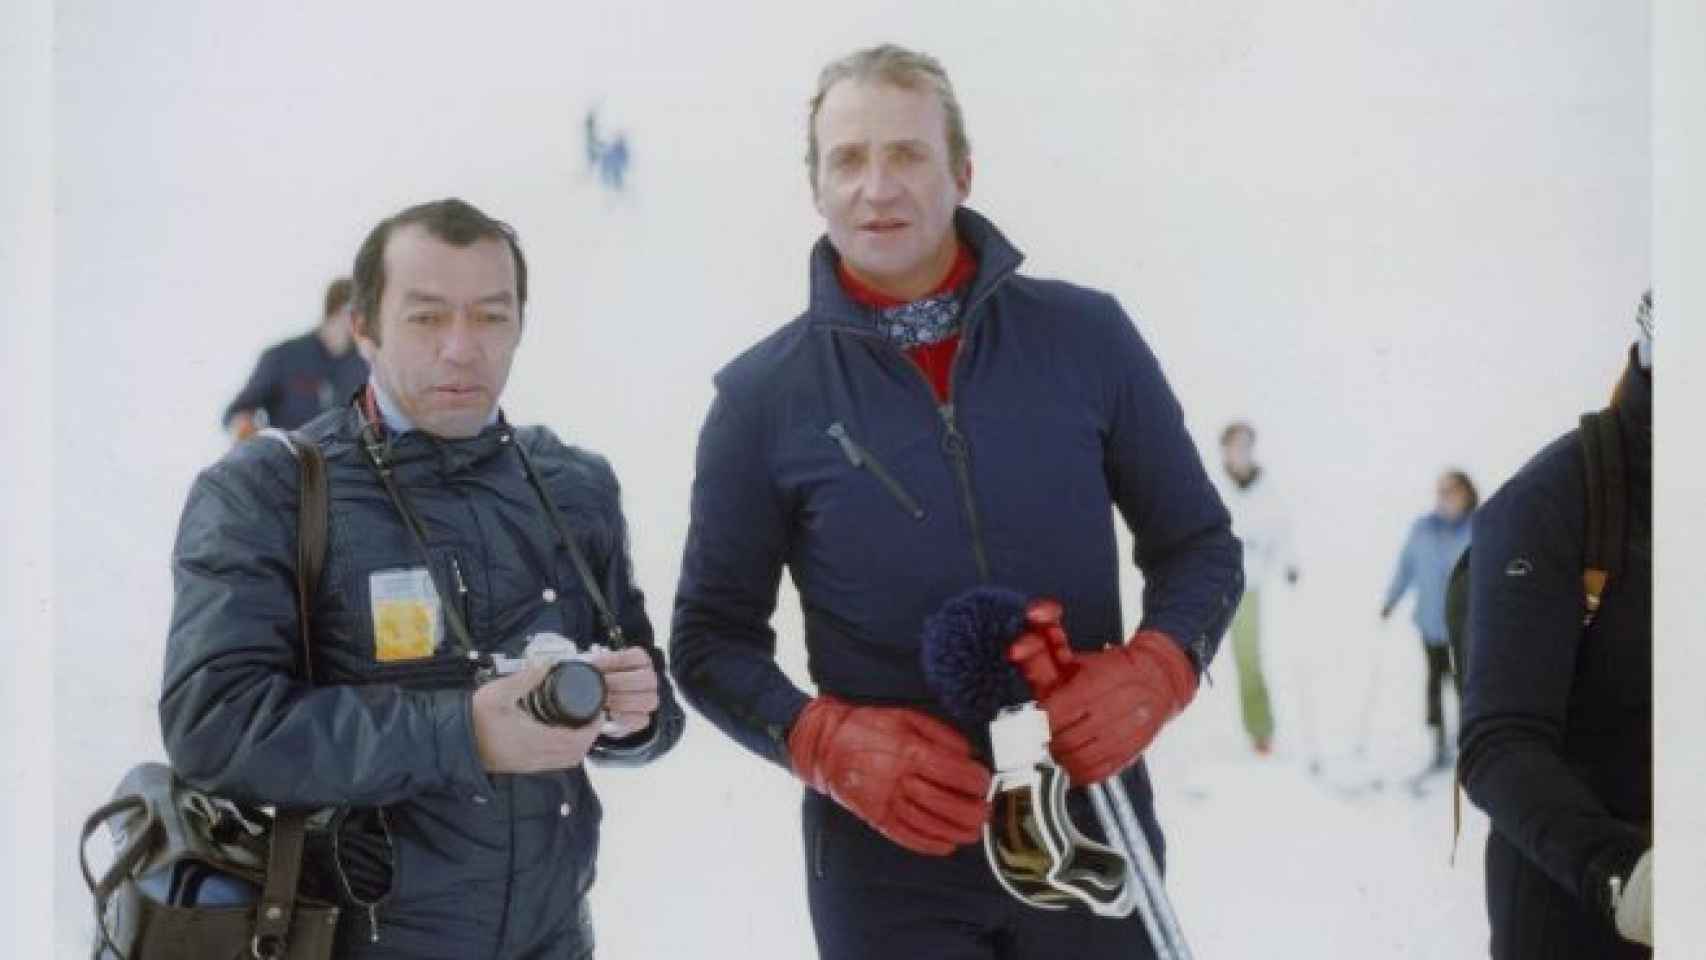 El fotógrafo Juan Chávez con el rey Don Juan Carlos en las pistas de esquí de Baqueria Beret en 1987.